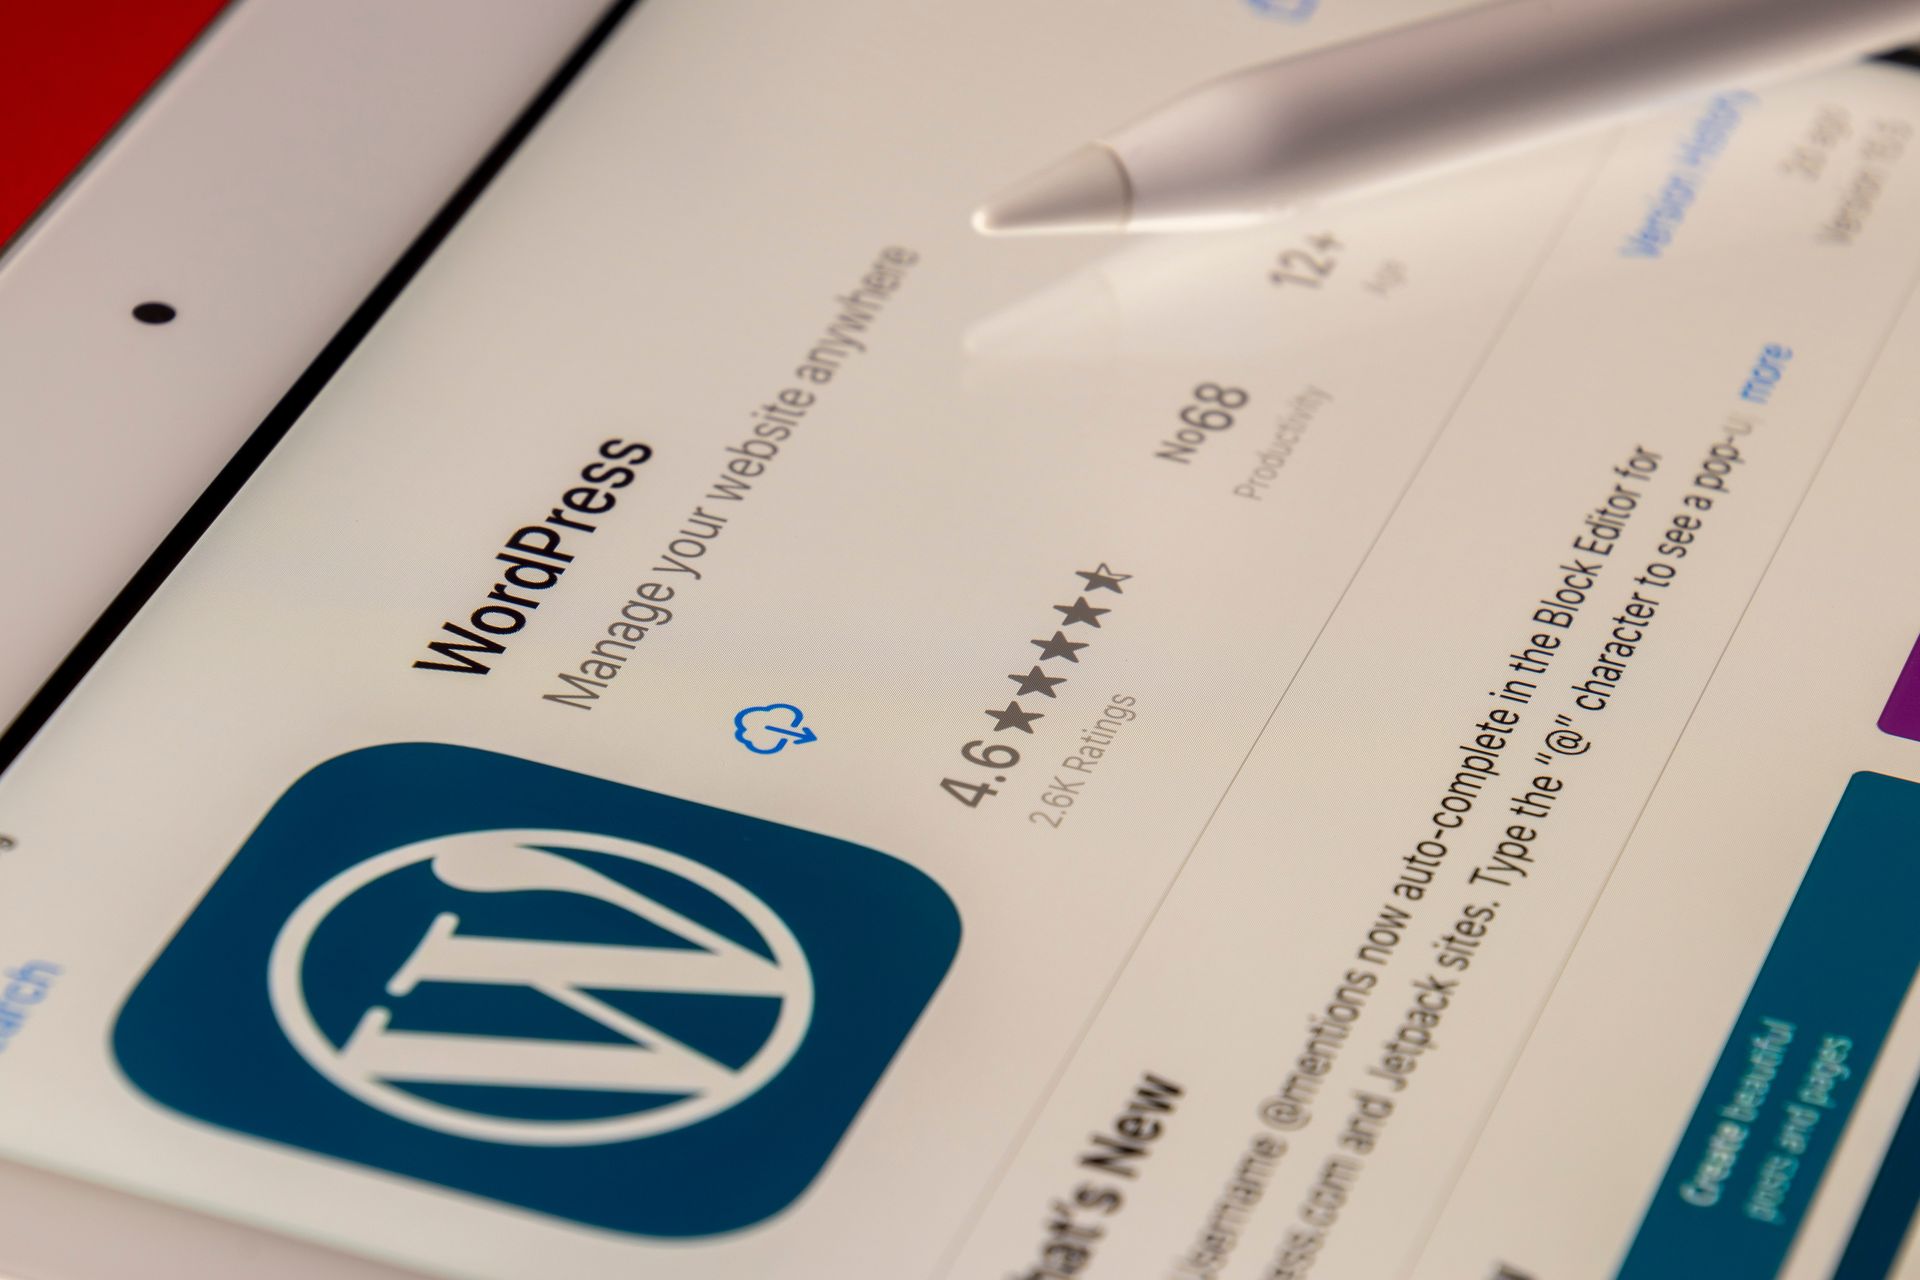 您应该将网站迁移到 WordPress 的 5 个理由